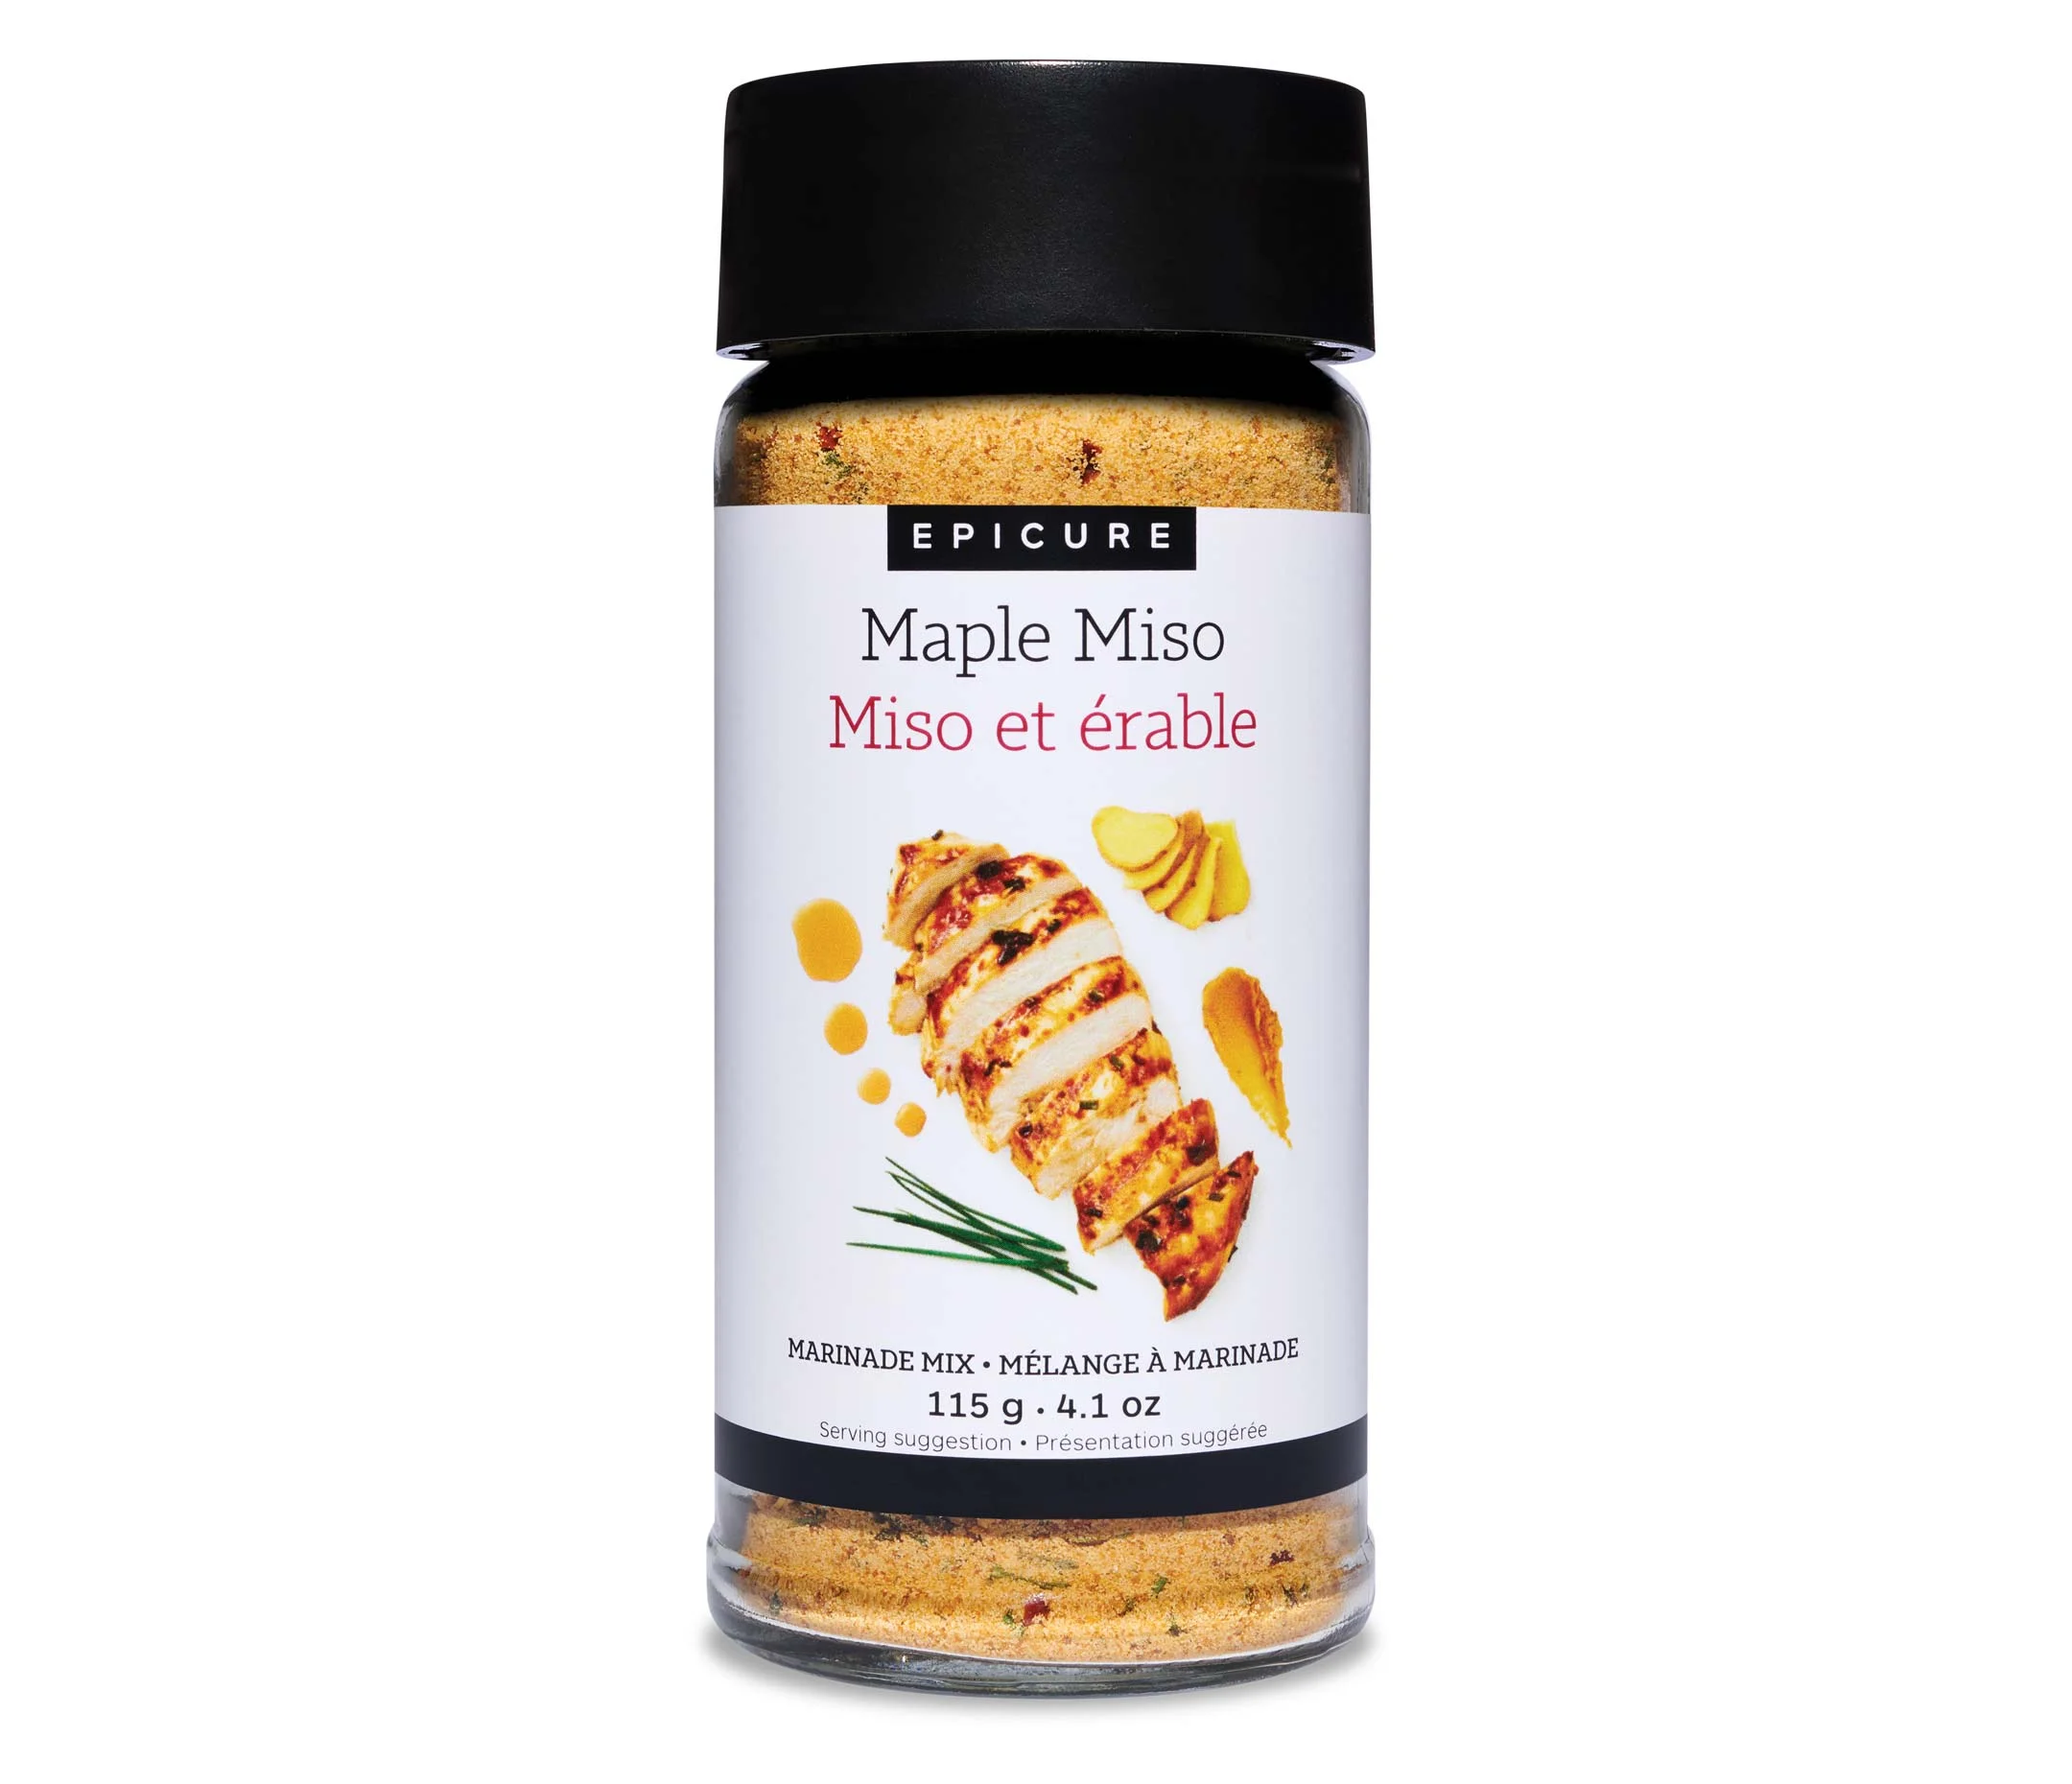 Maple Miso Marinade Mix